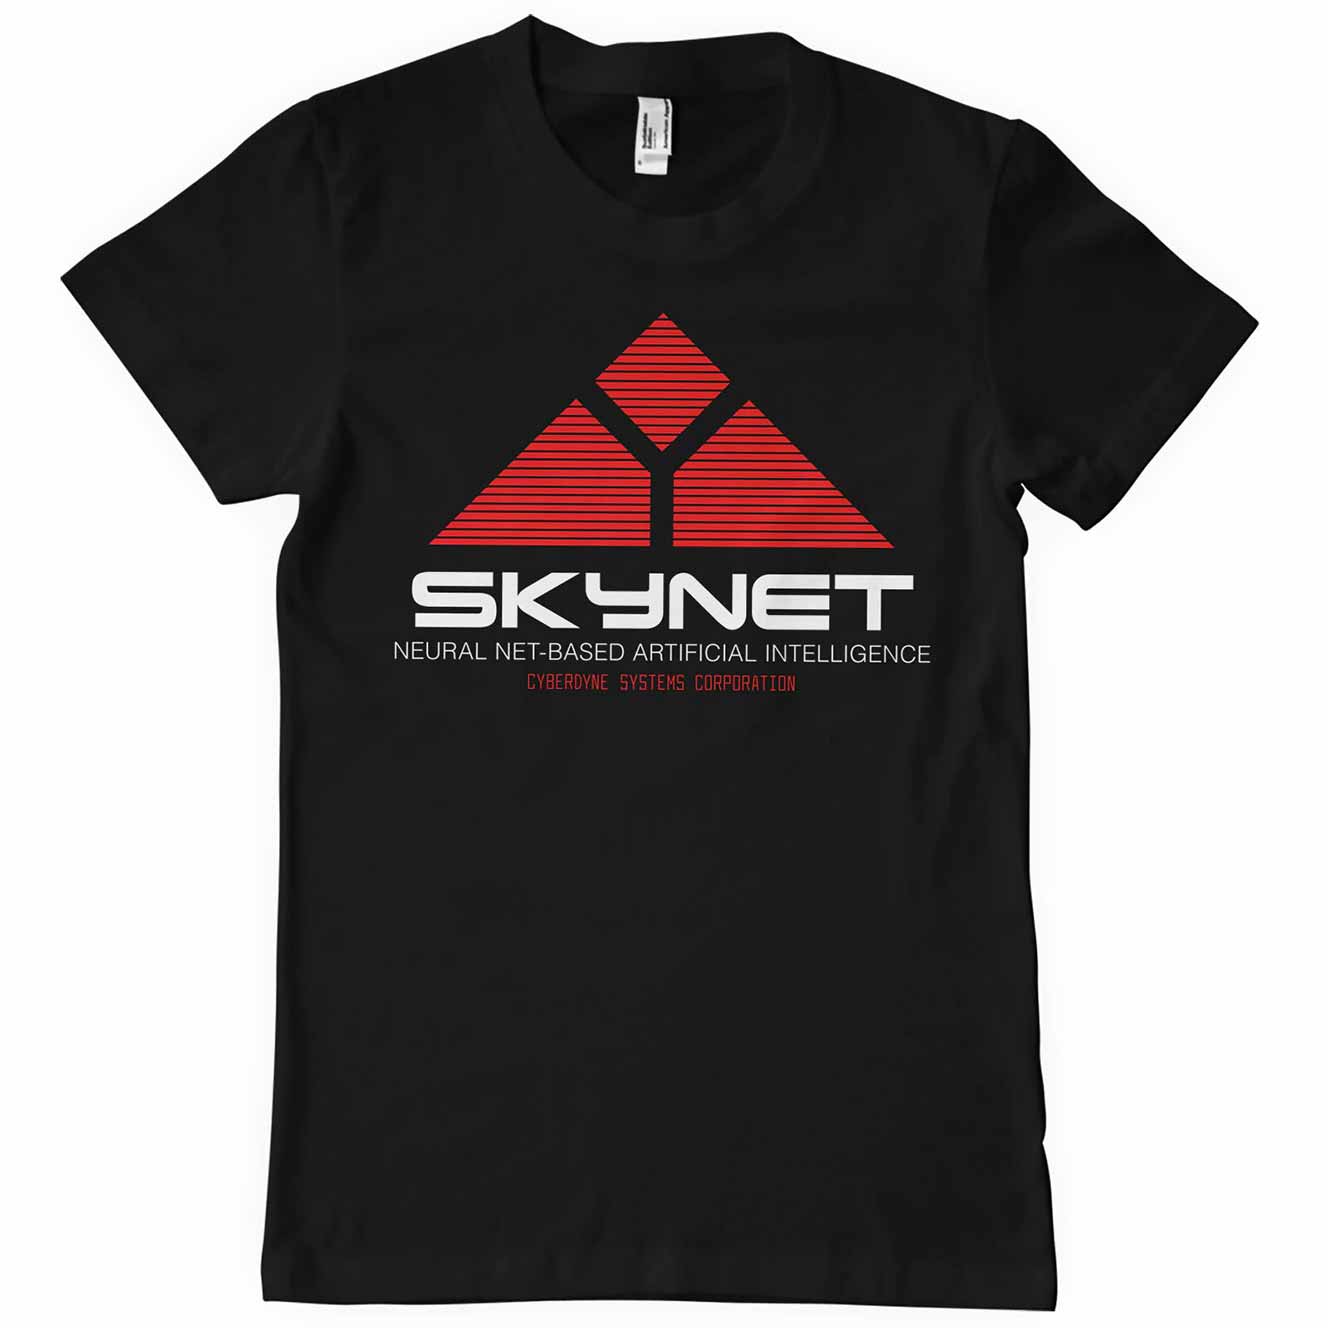 Sort T-shirt med Skynet logoet fra Terminator trykt på brystet